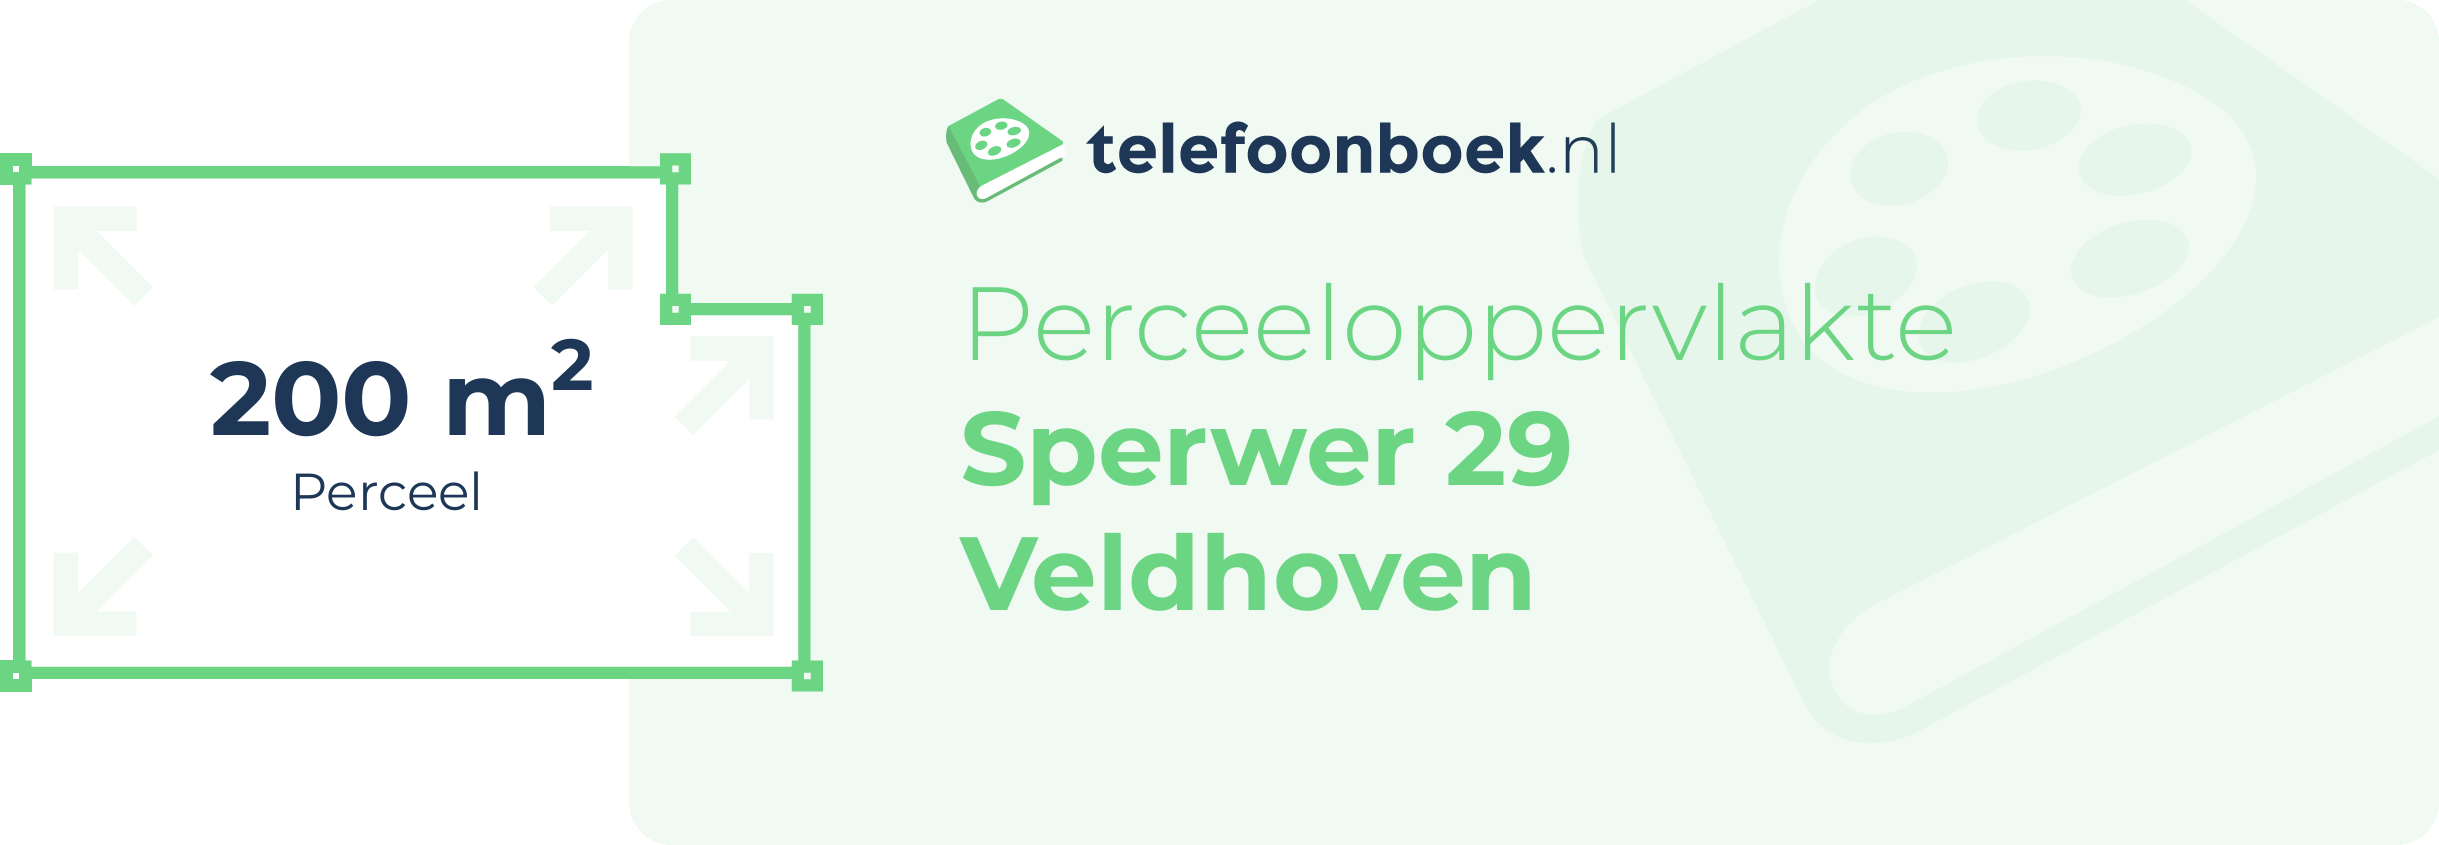 Perceeloppervlakte Sperwer 29 Veldhoven